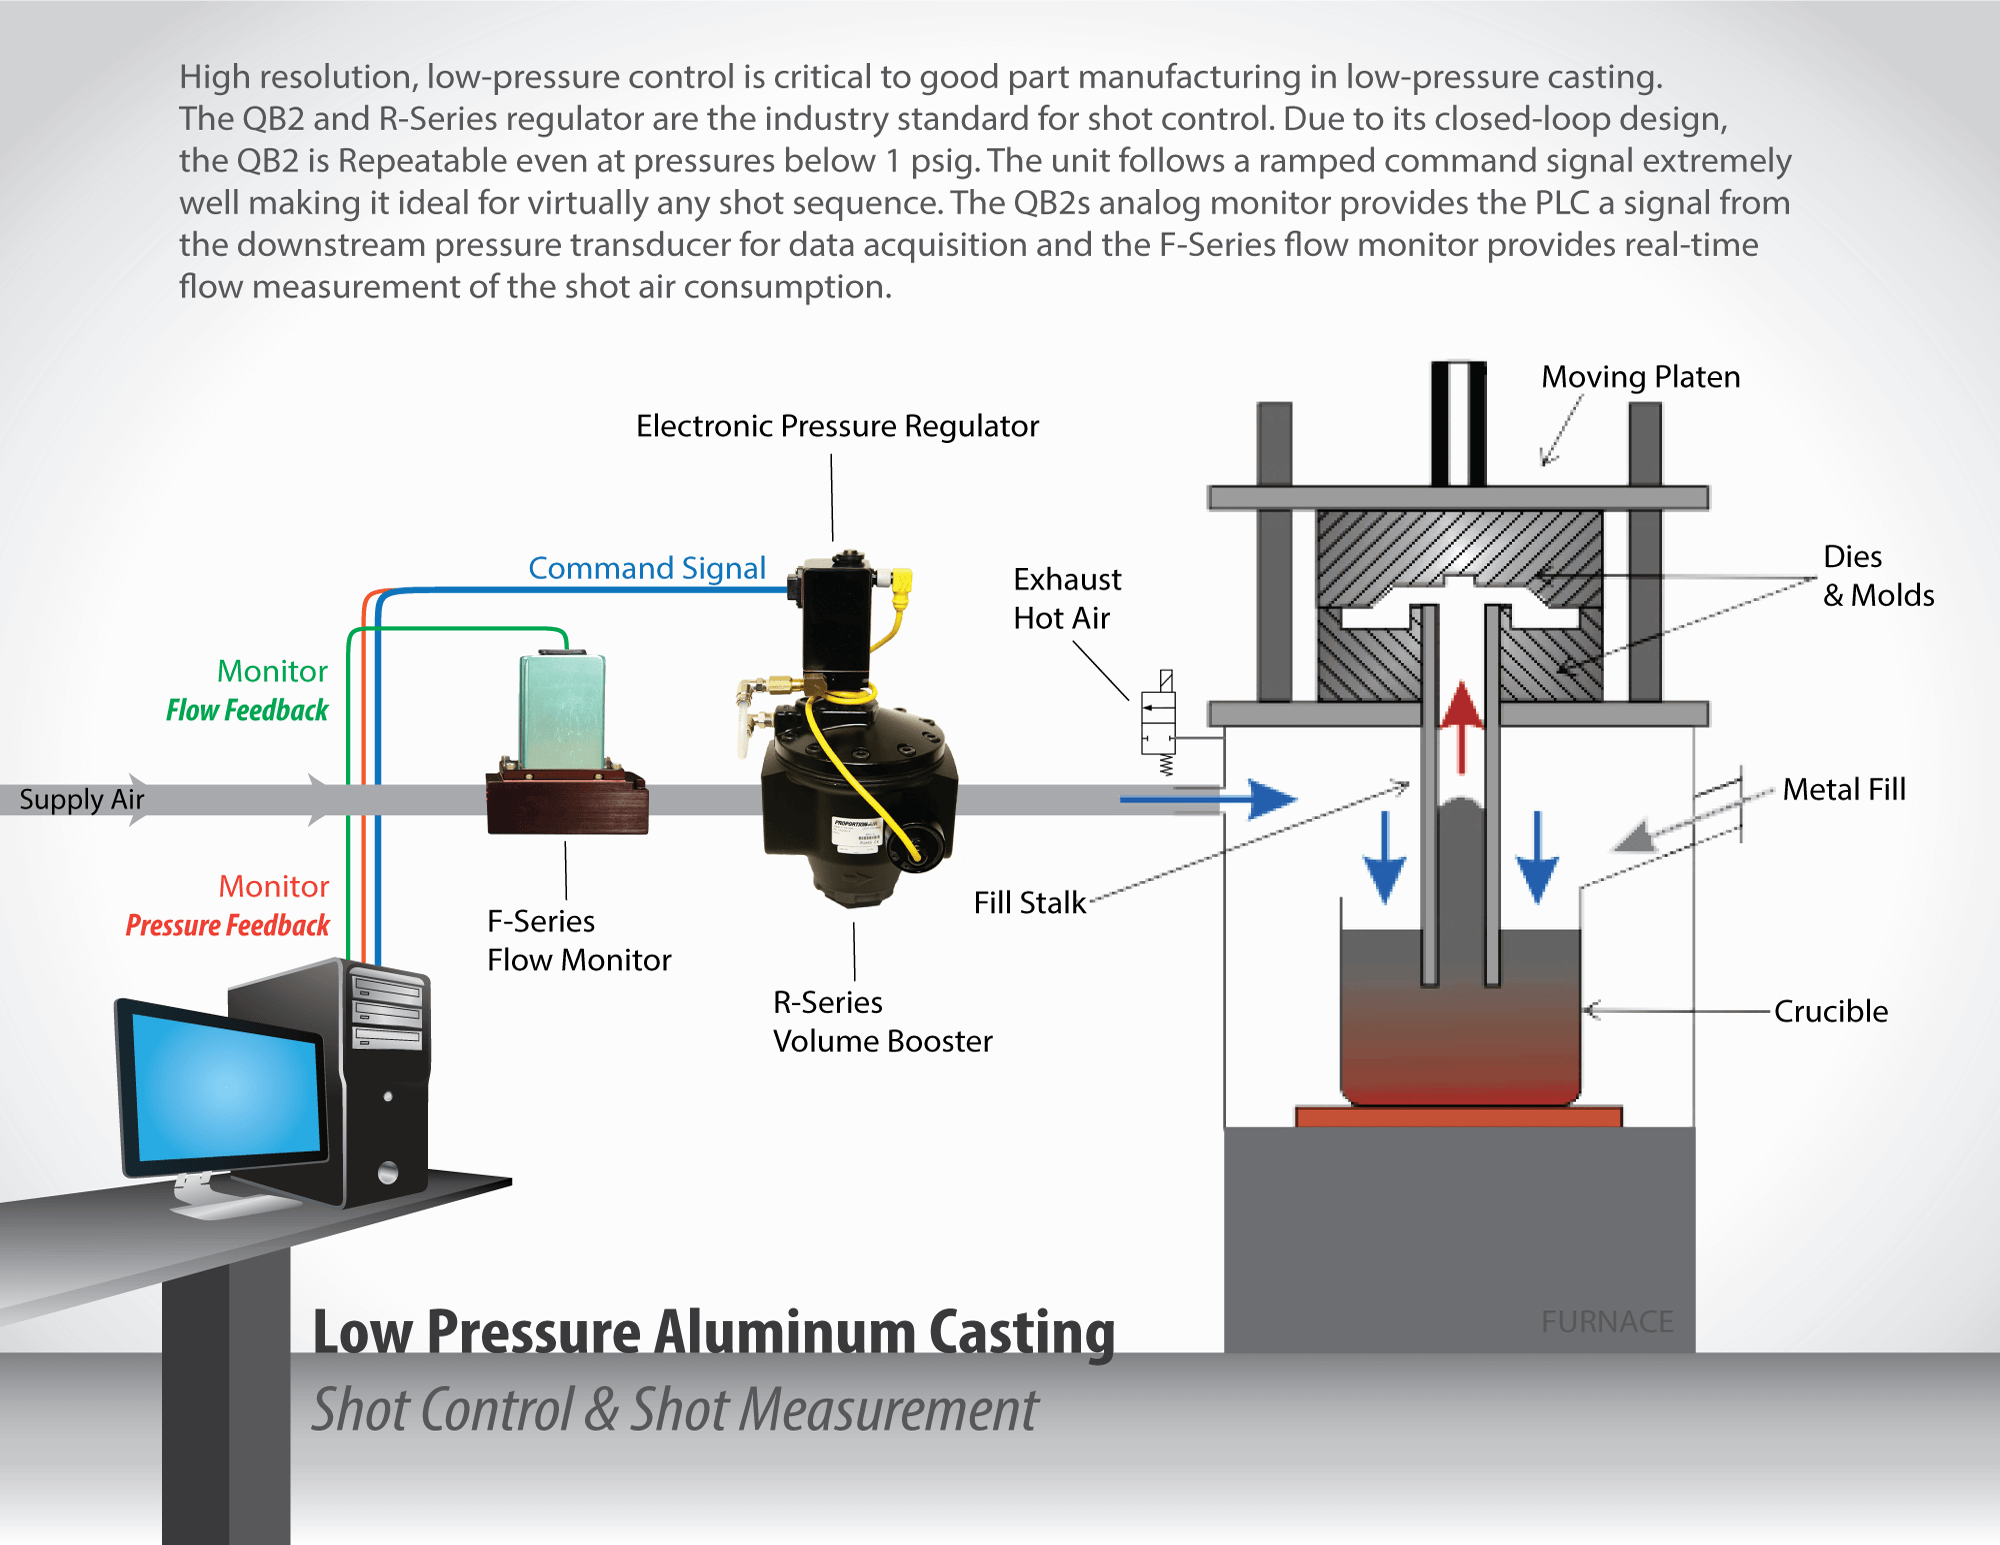 Low Pressure Aluminum Casting